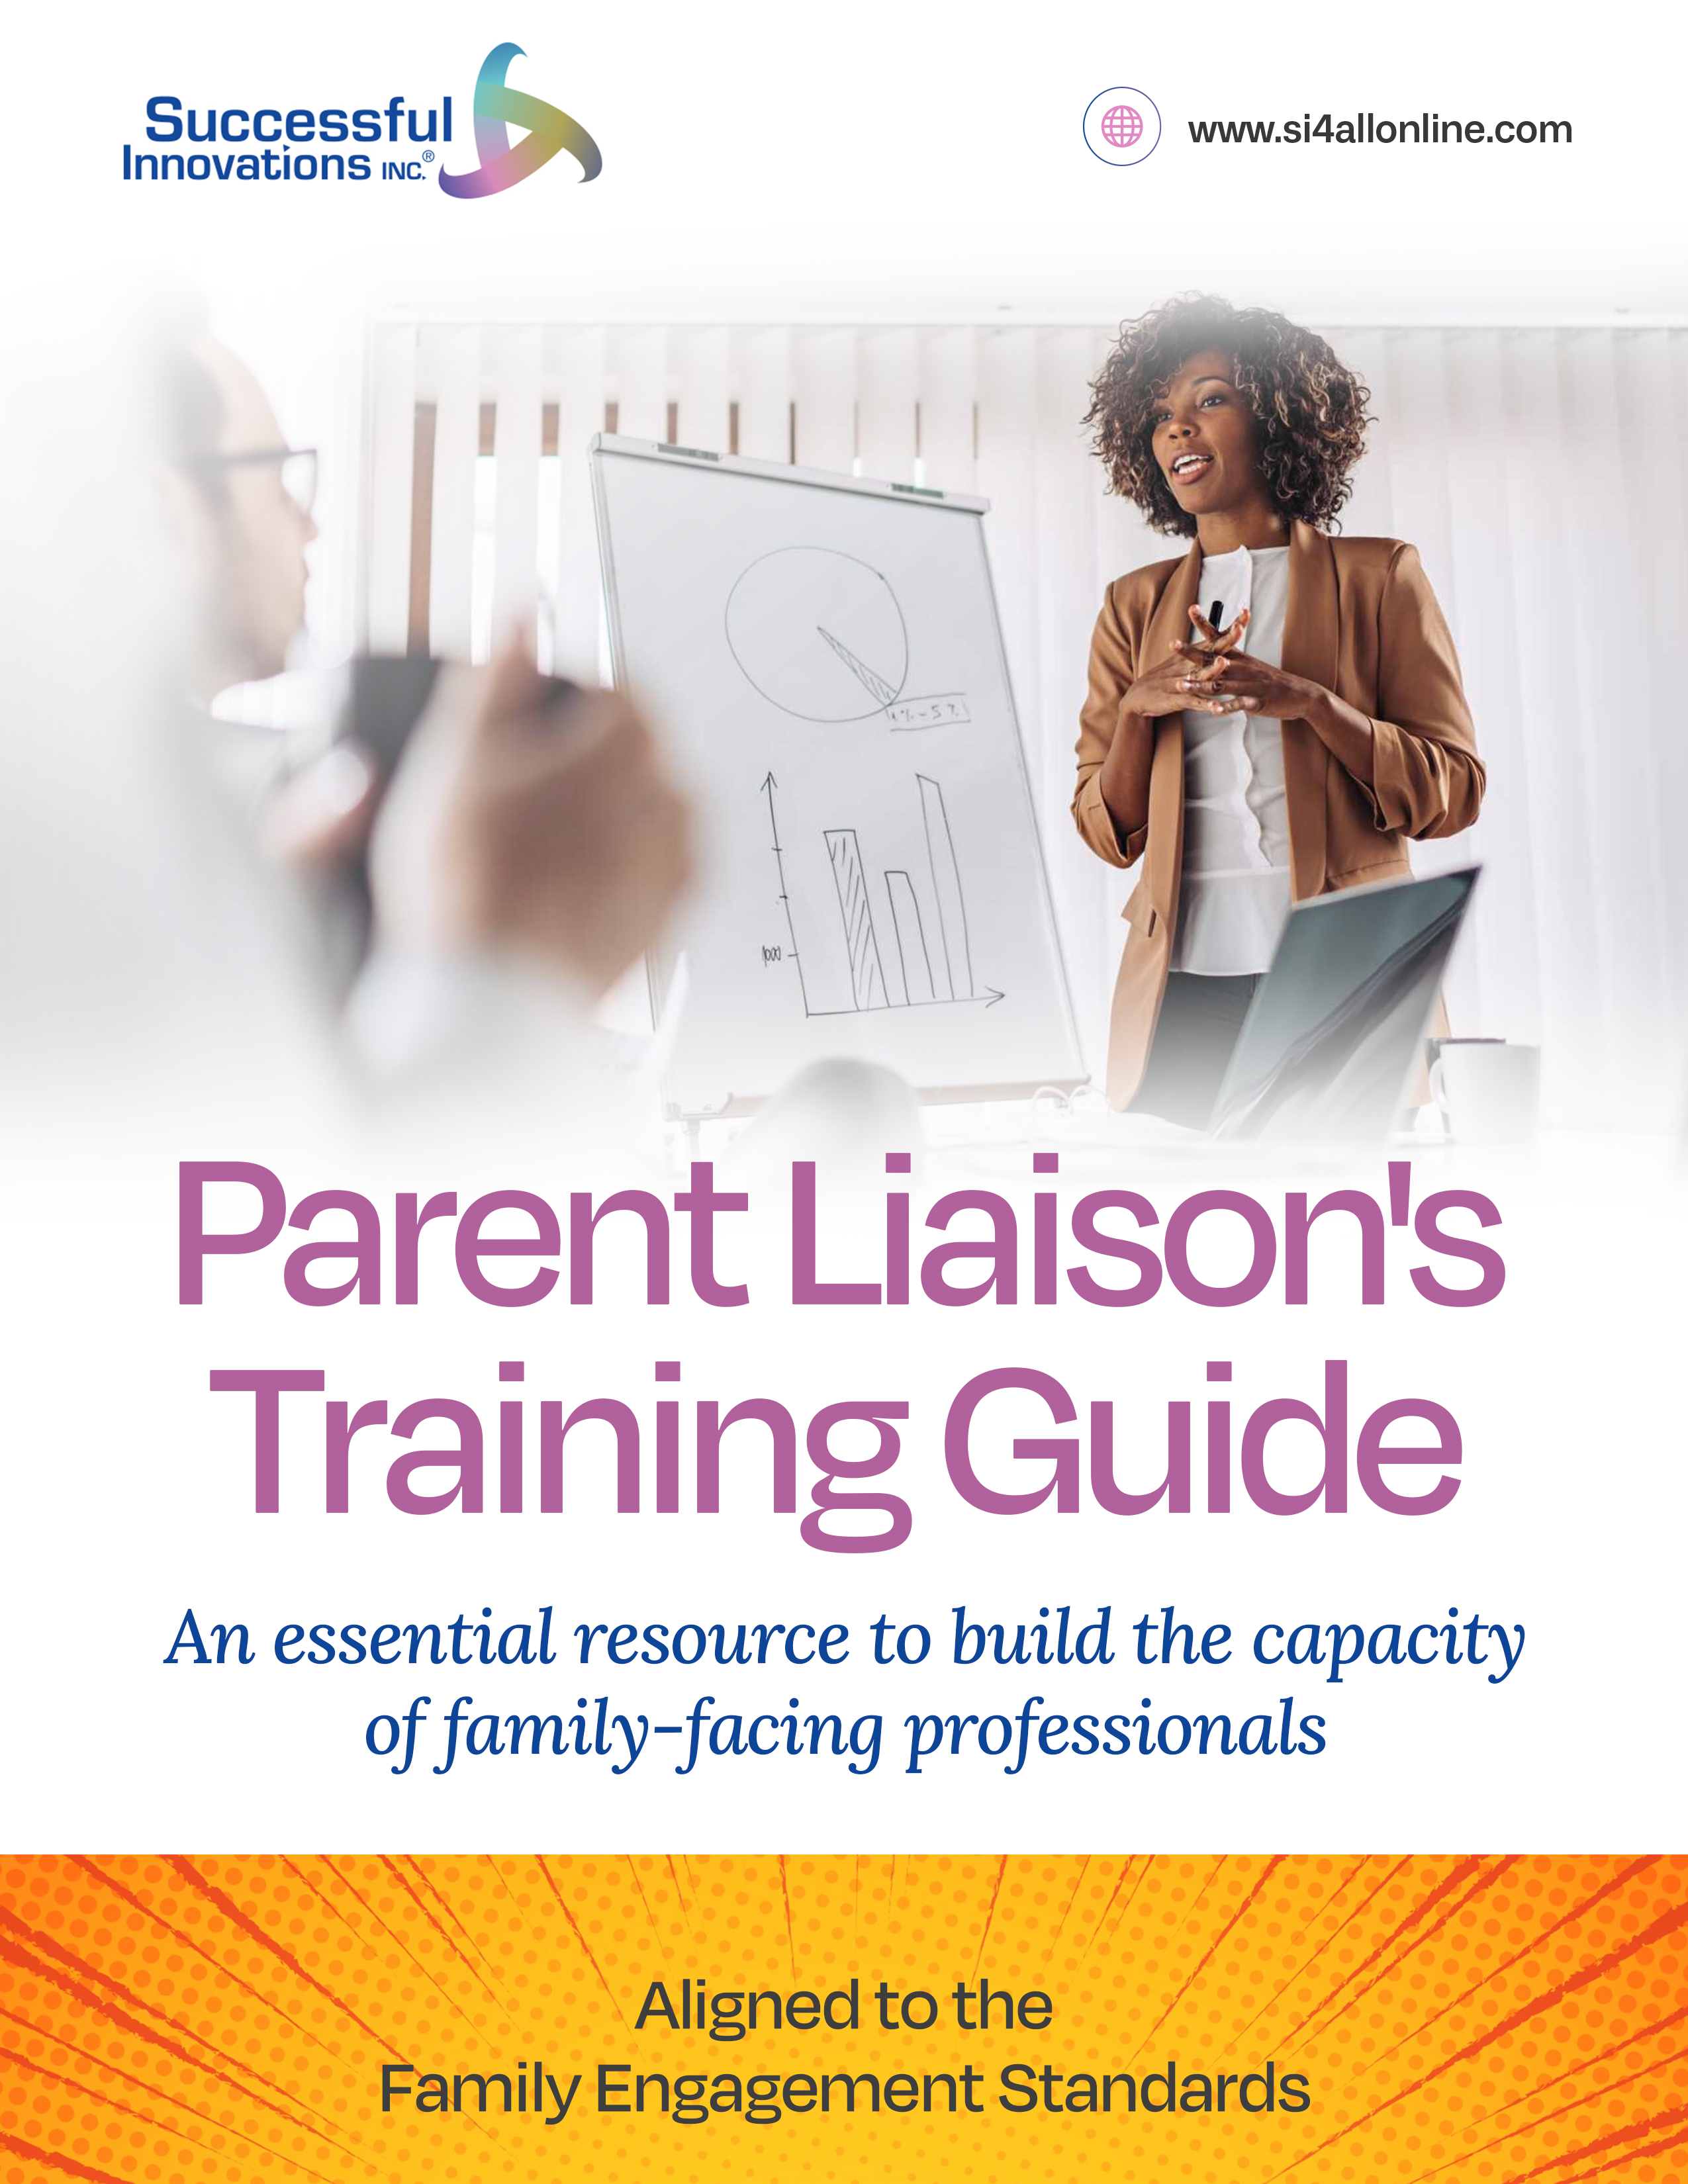 Parent Coordinator's Manual